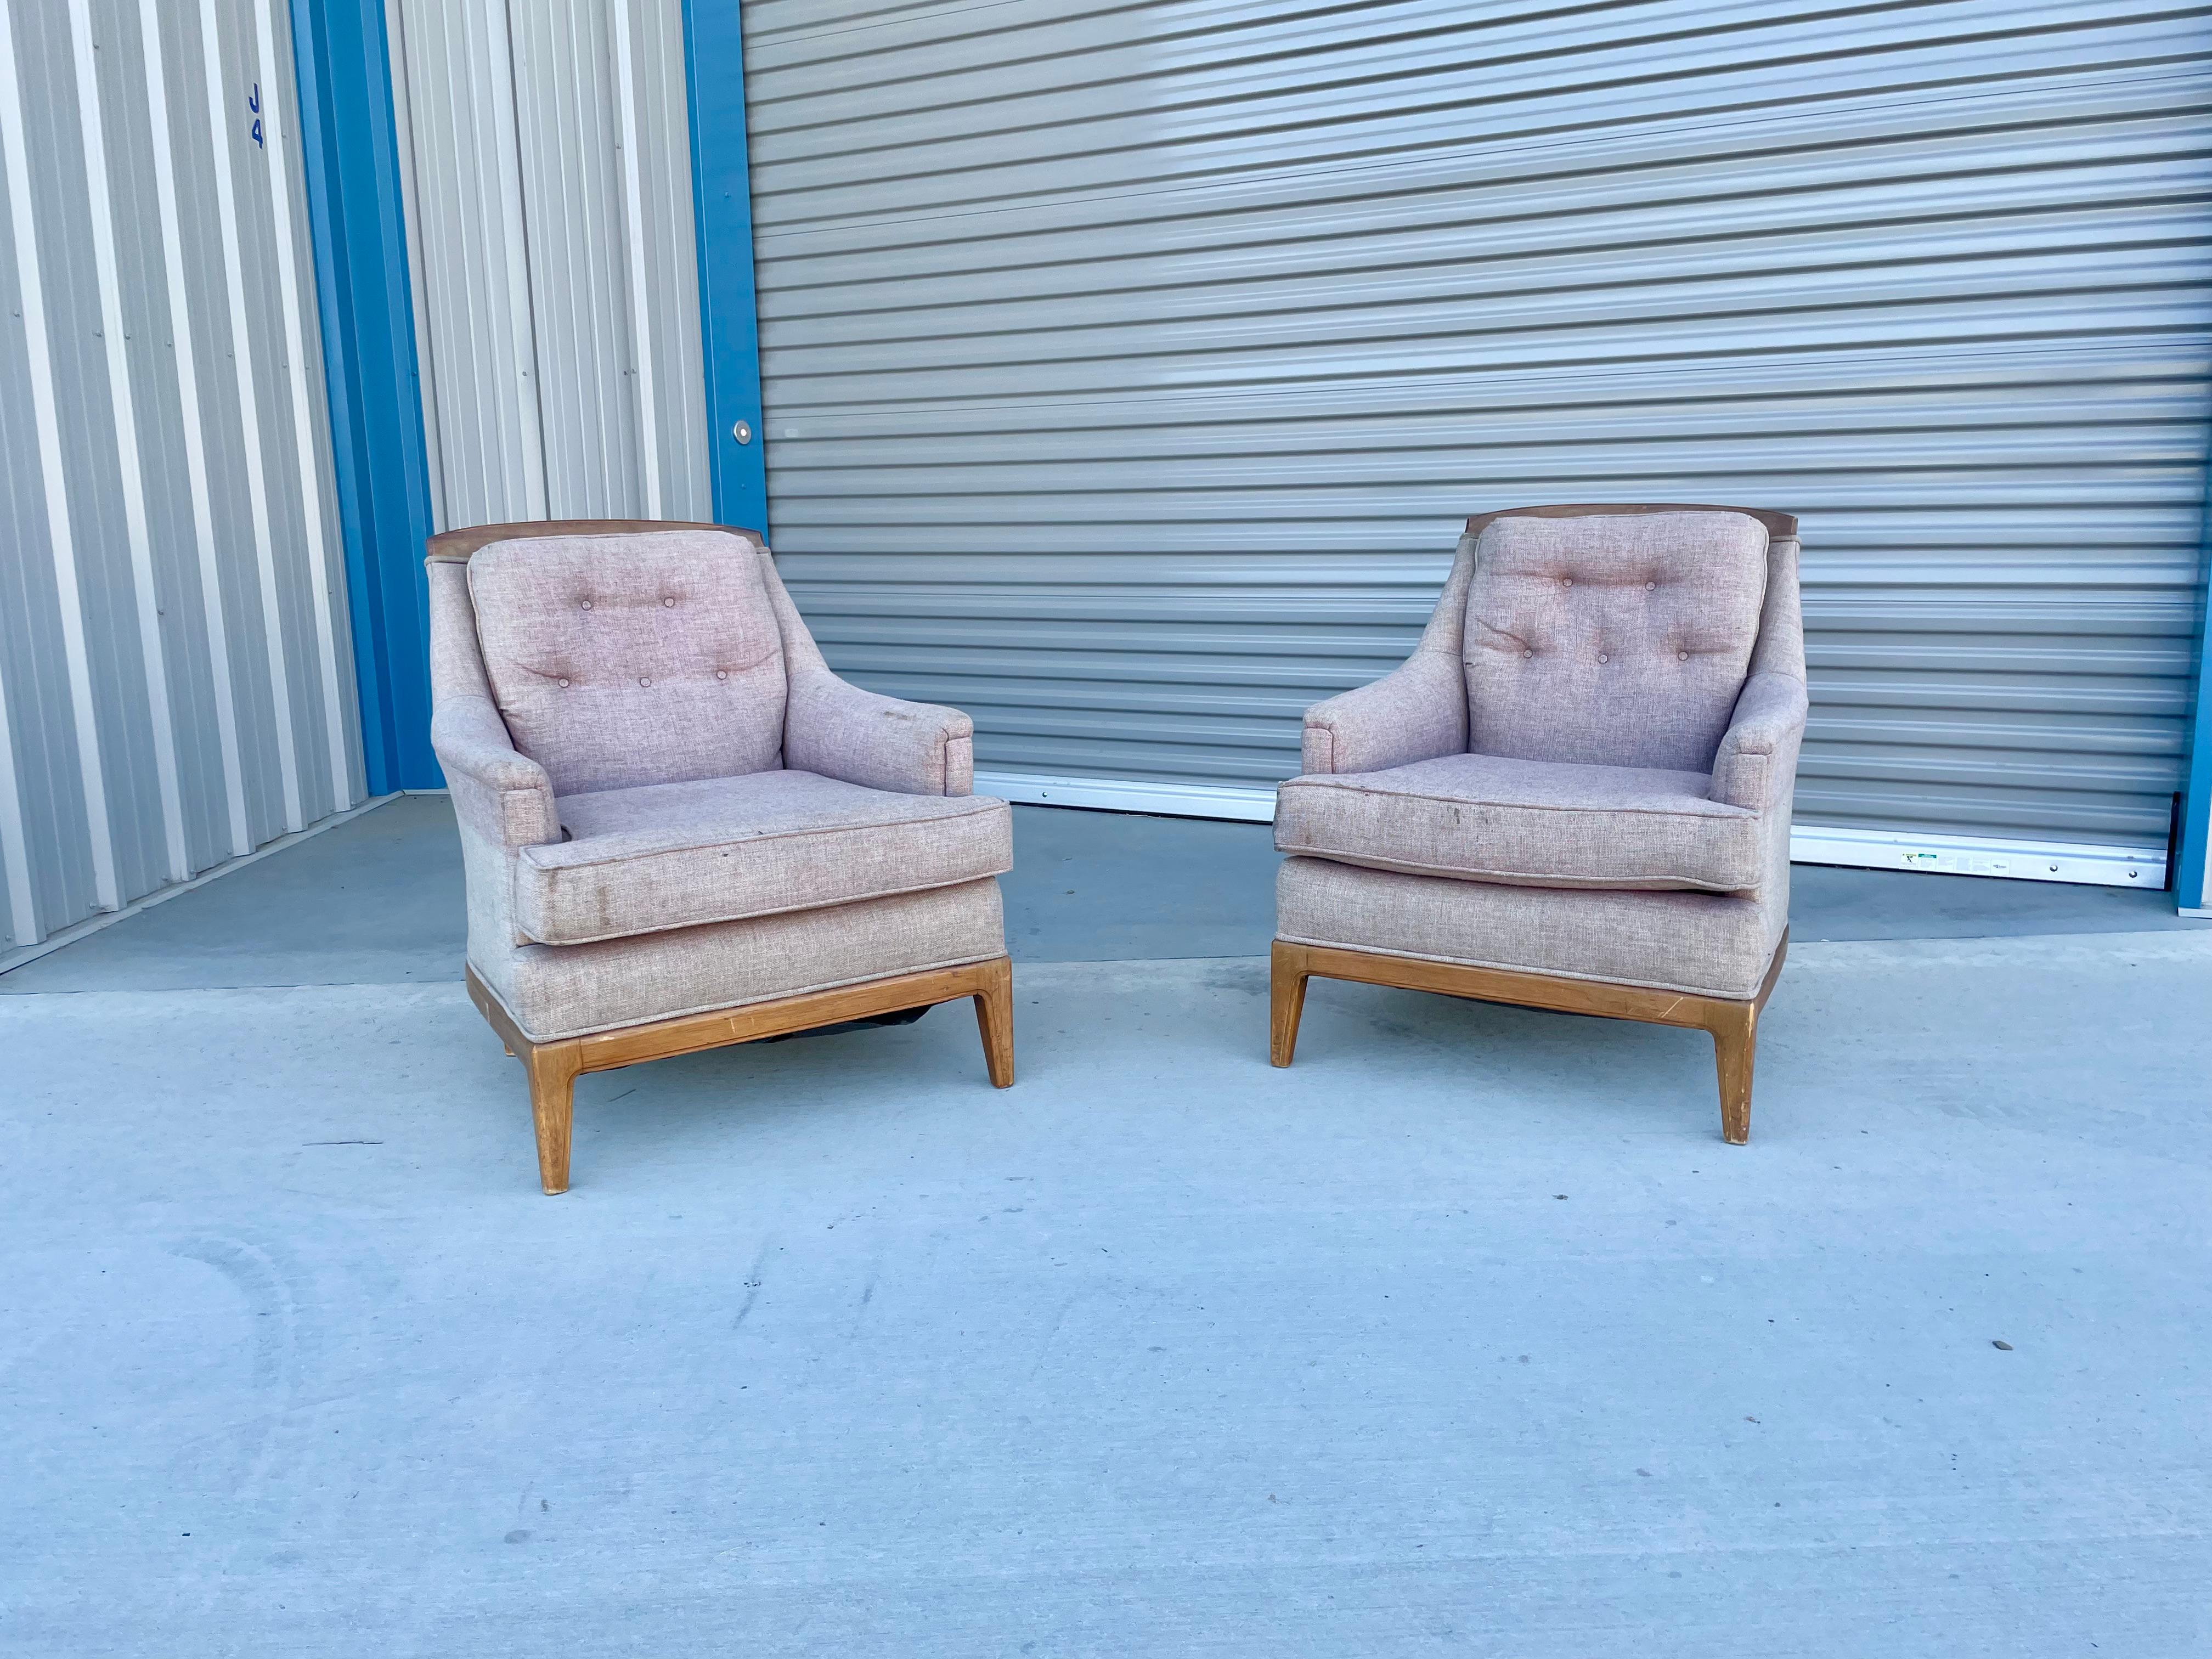 Les chaises de salon vintage en noyer ont été conçues et fabriquées aux États-Unis dans les années 1960. Cette paire de chaises est dotée de sa tapisserie d'origine qui doit être retapissée, mais c'est l'occasion idéale de créer le design idéal qui